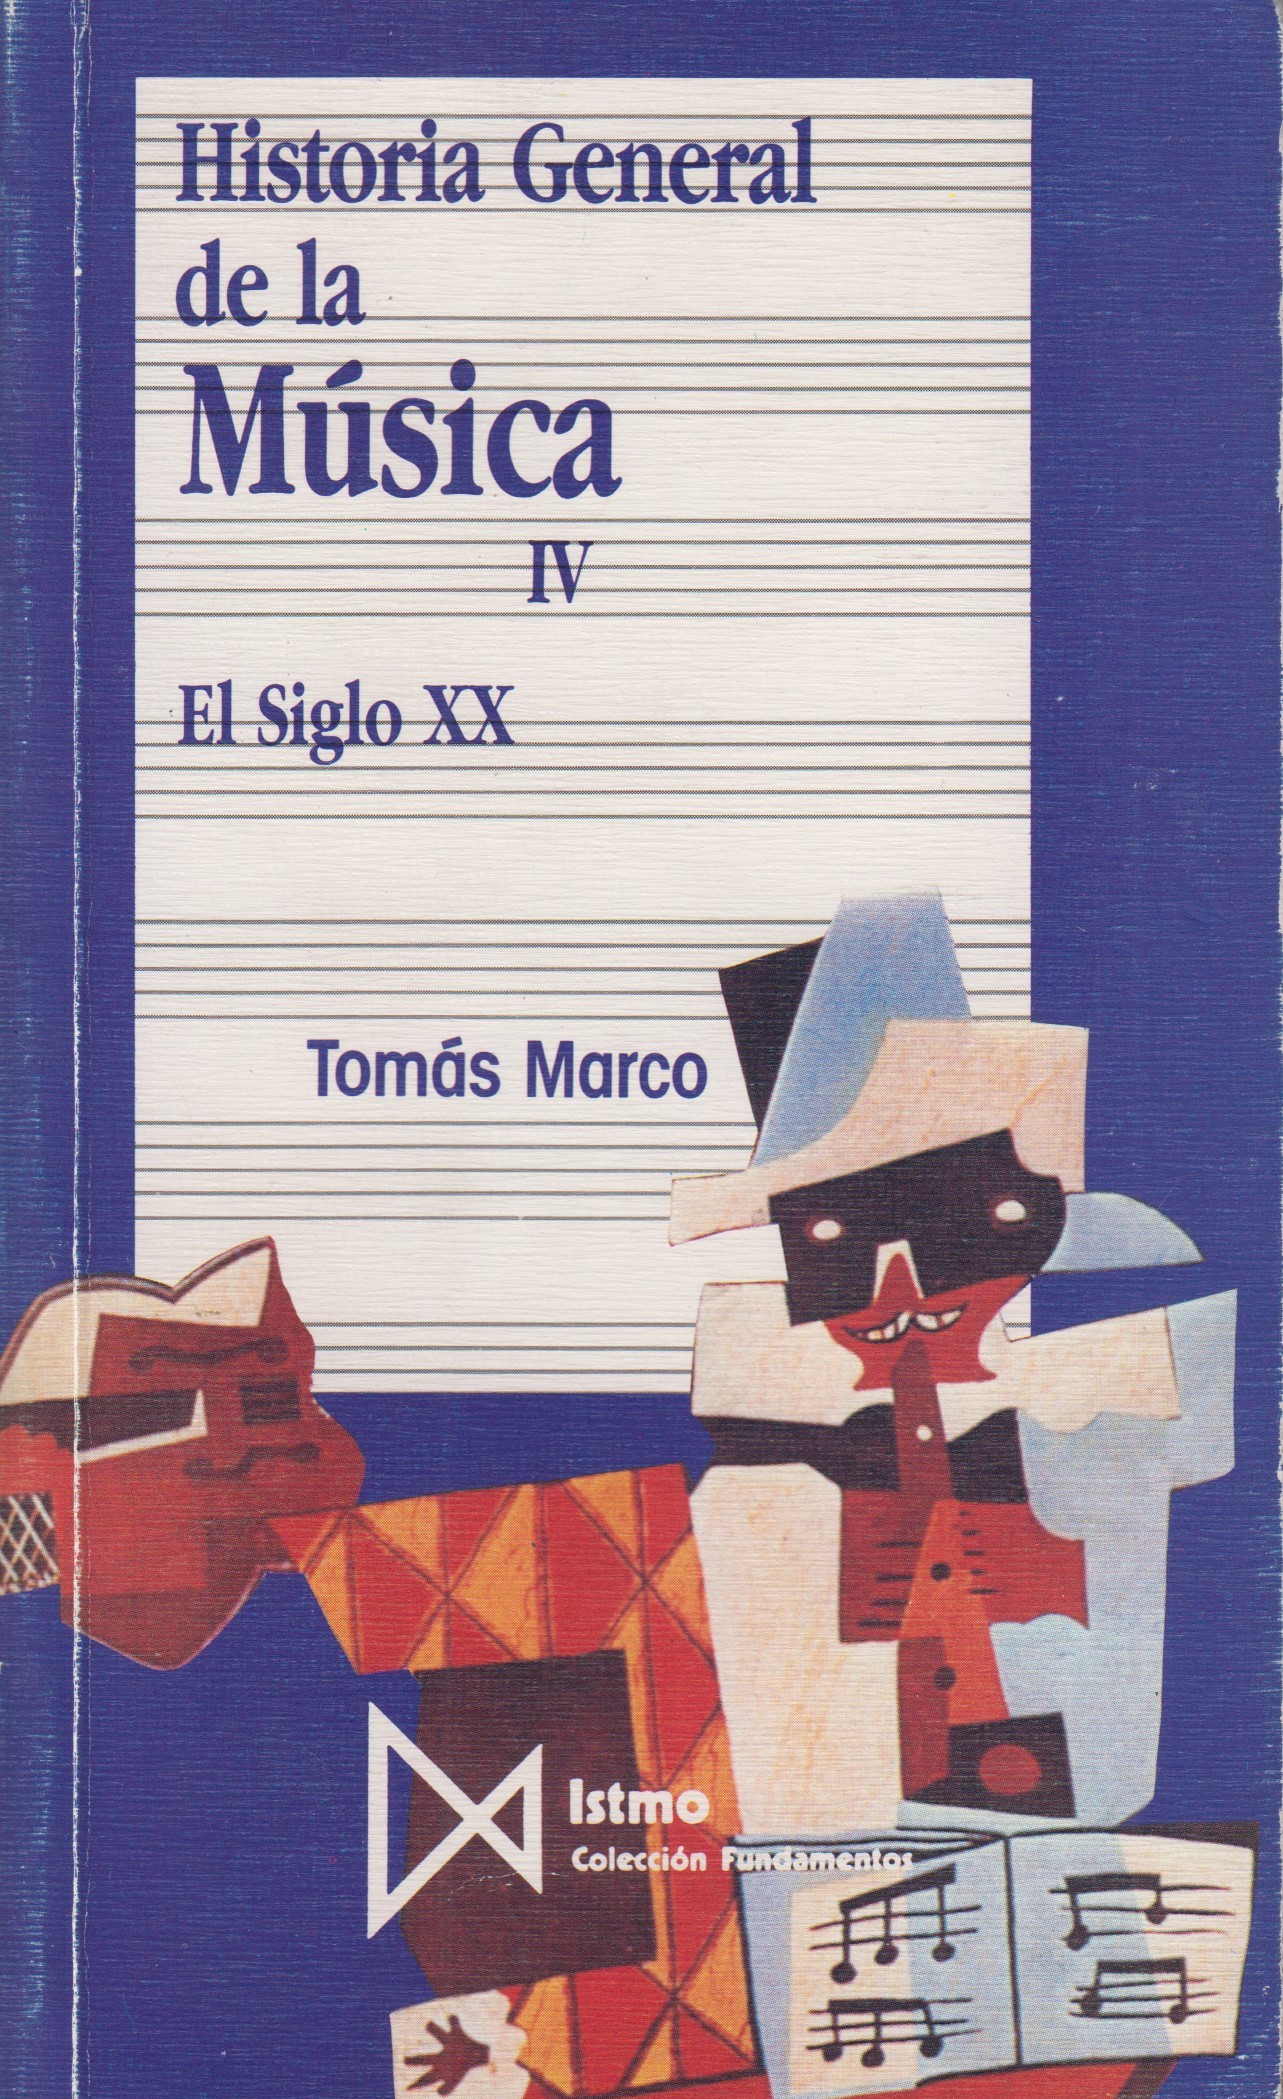 Historia General de la Música IV: El siglo XX. Tomás Marco